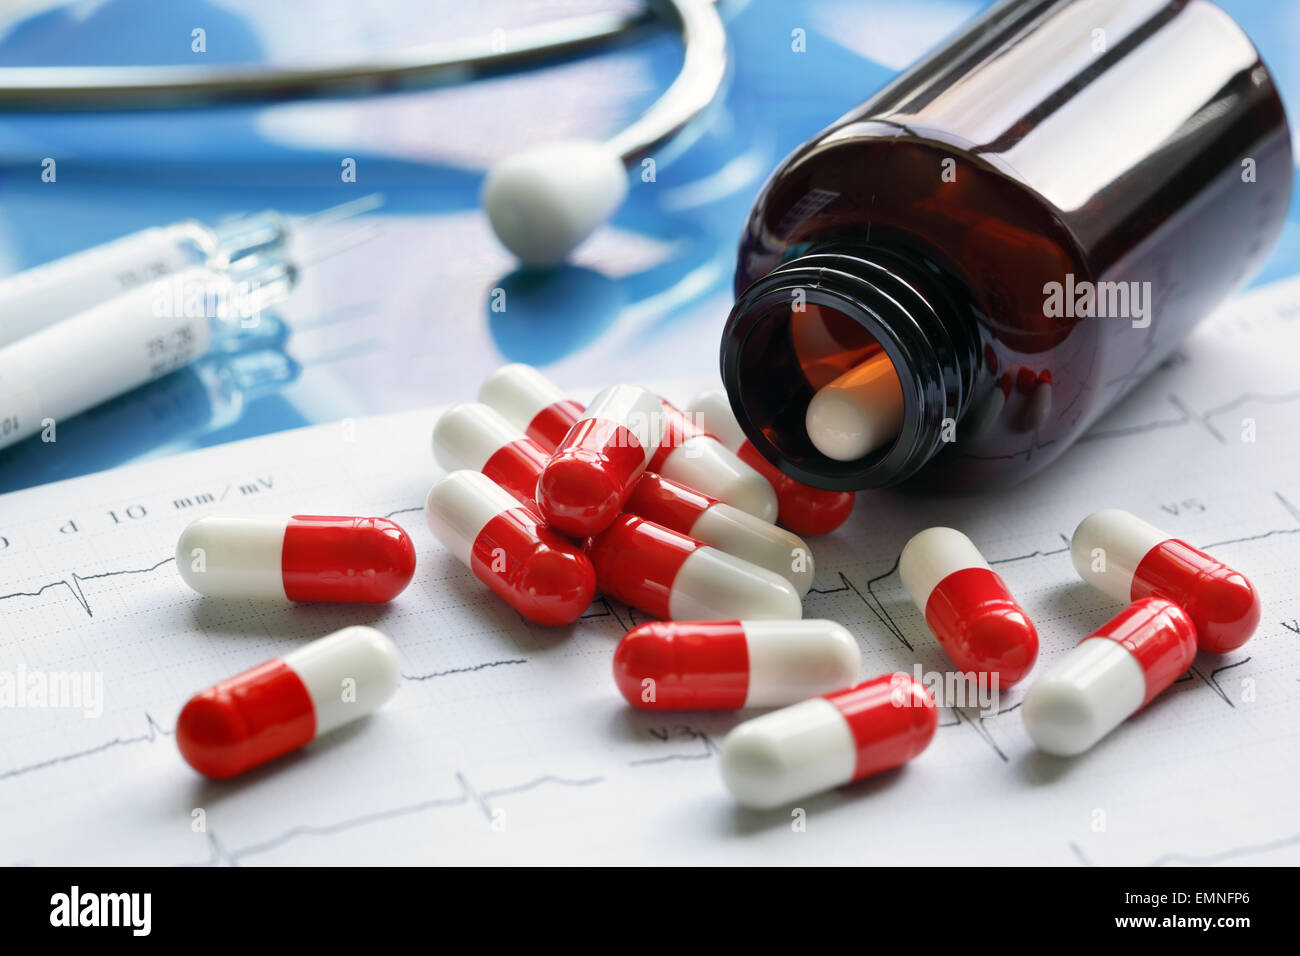 Prescription drugs Stock Photo